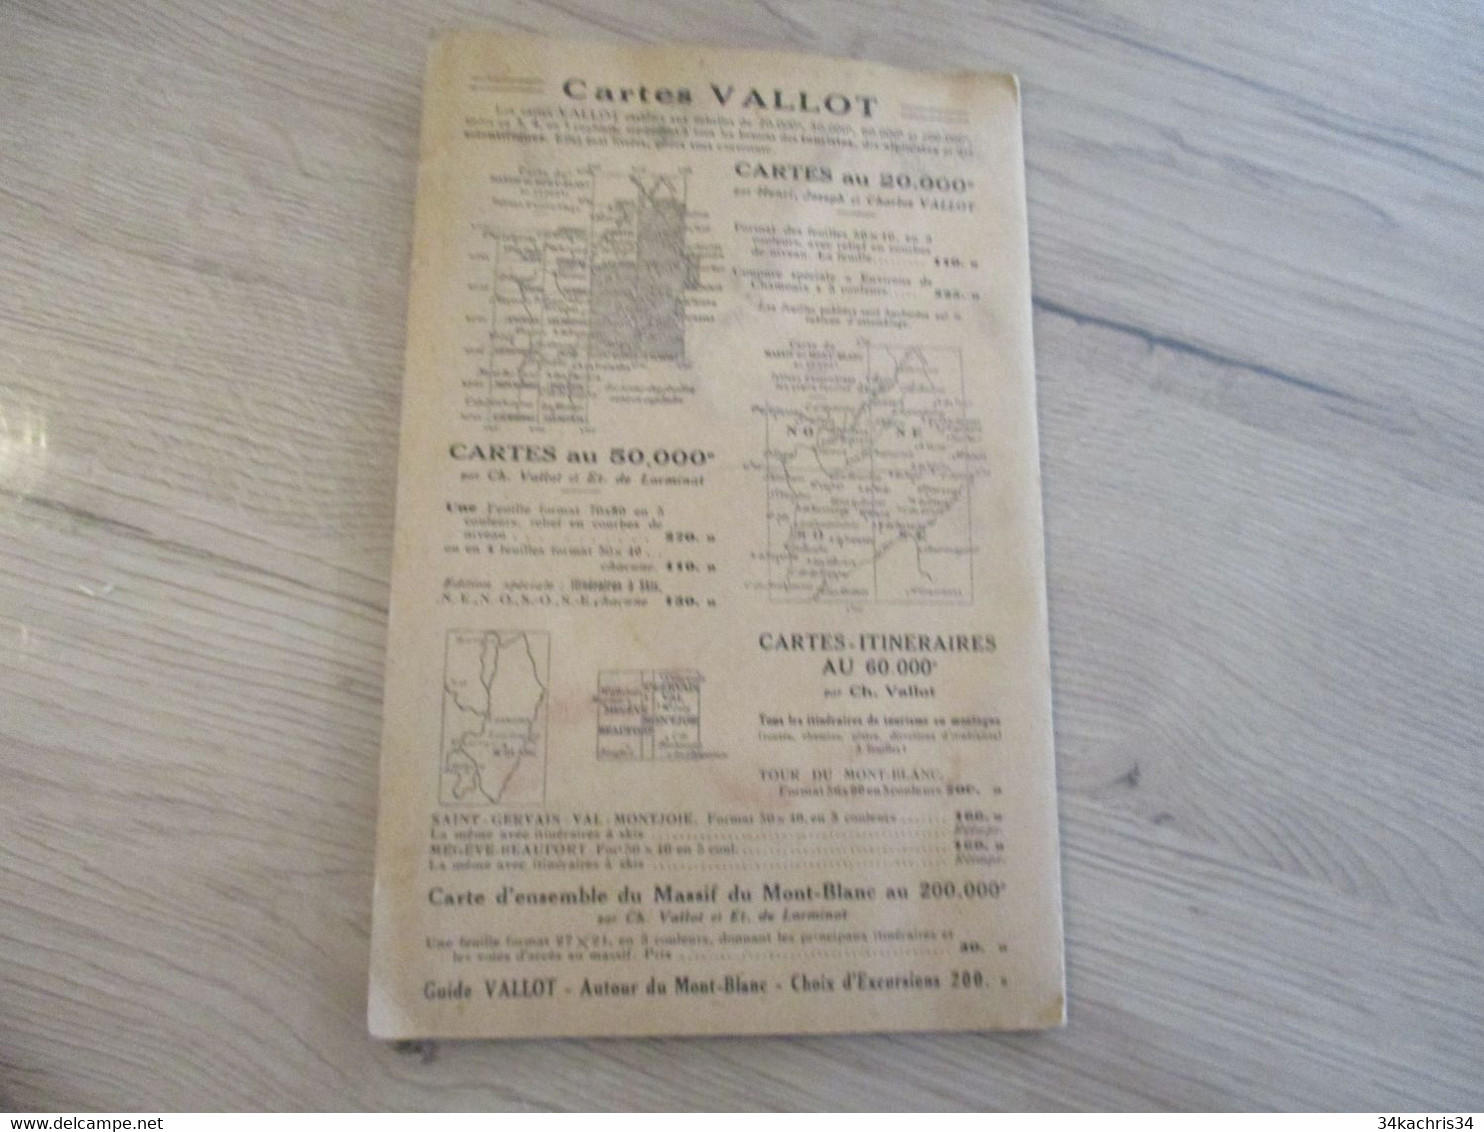 Carte Géographique Touristique Vallot 1951 Environs De Chamonix - Landkarten